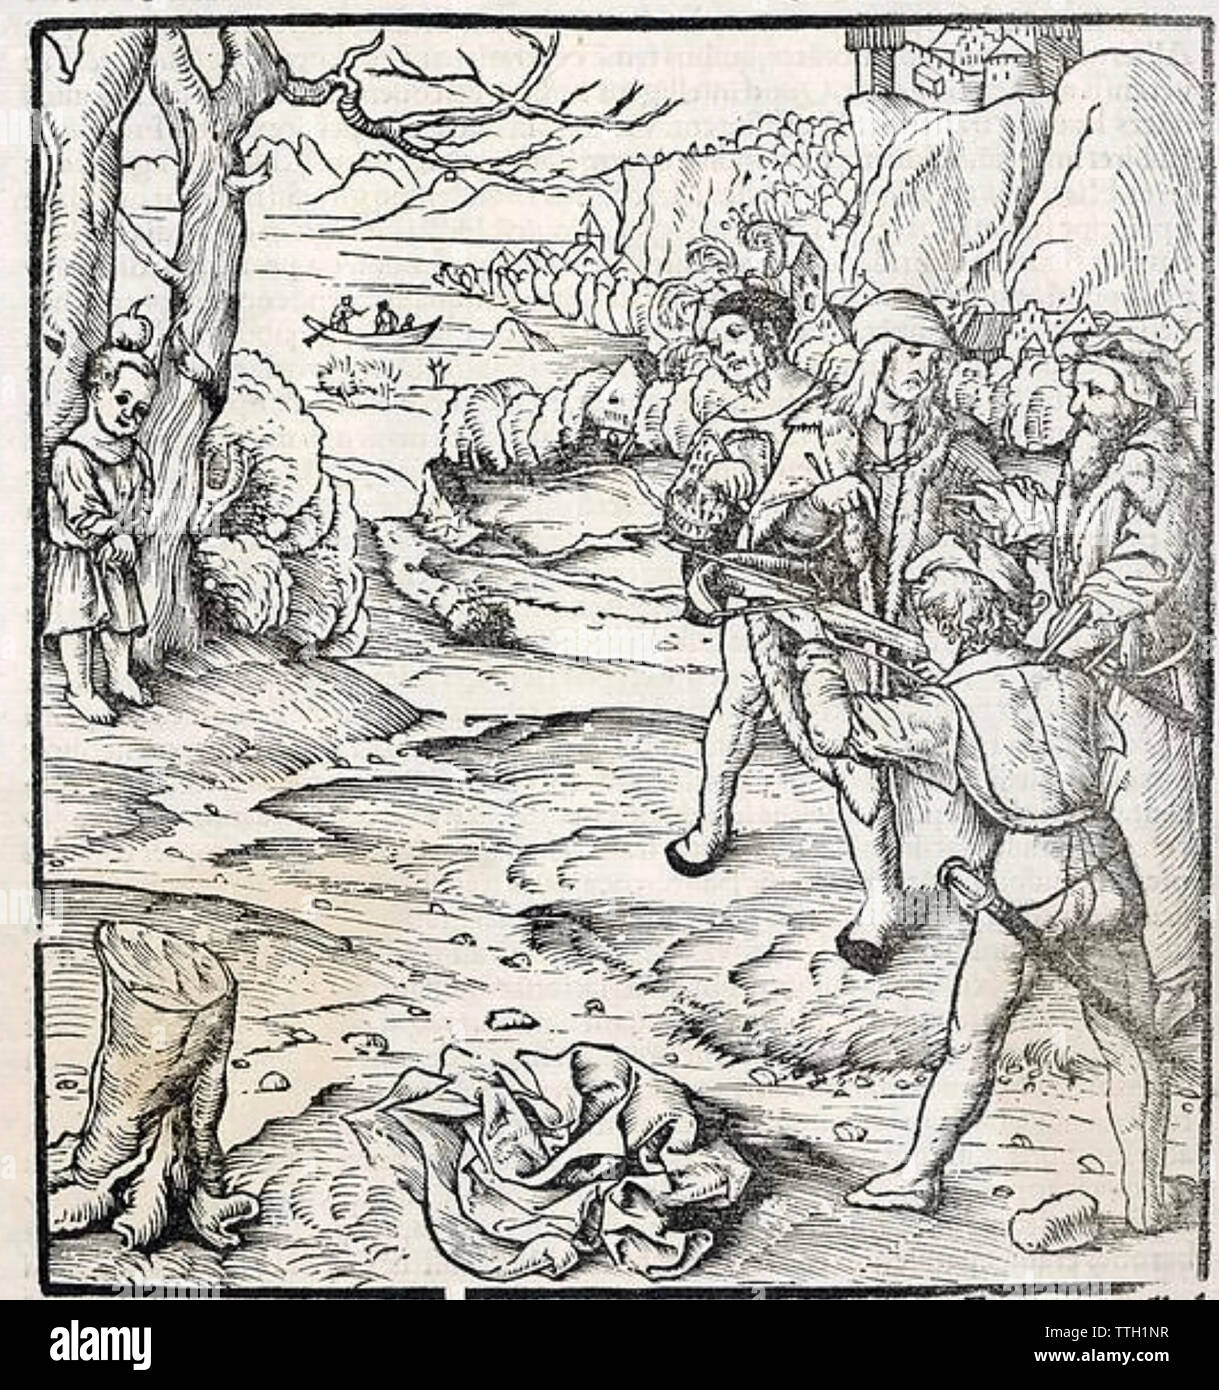 WILLIAM TELL Suisse mythique héros dans une gravure du 15e siècle Banque D'Images